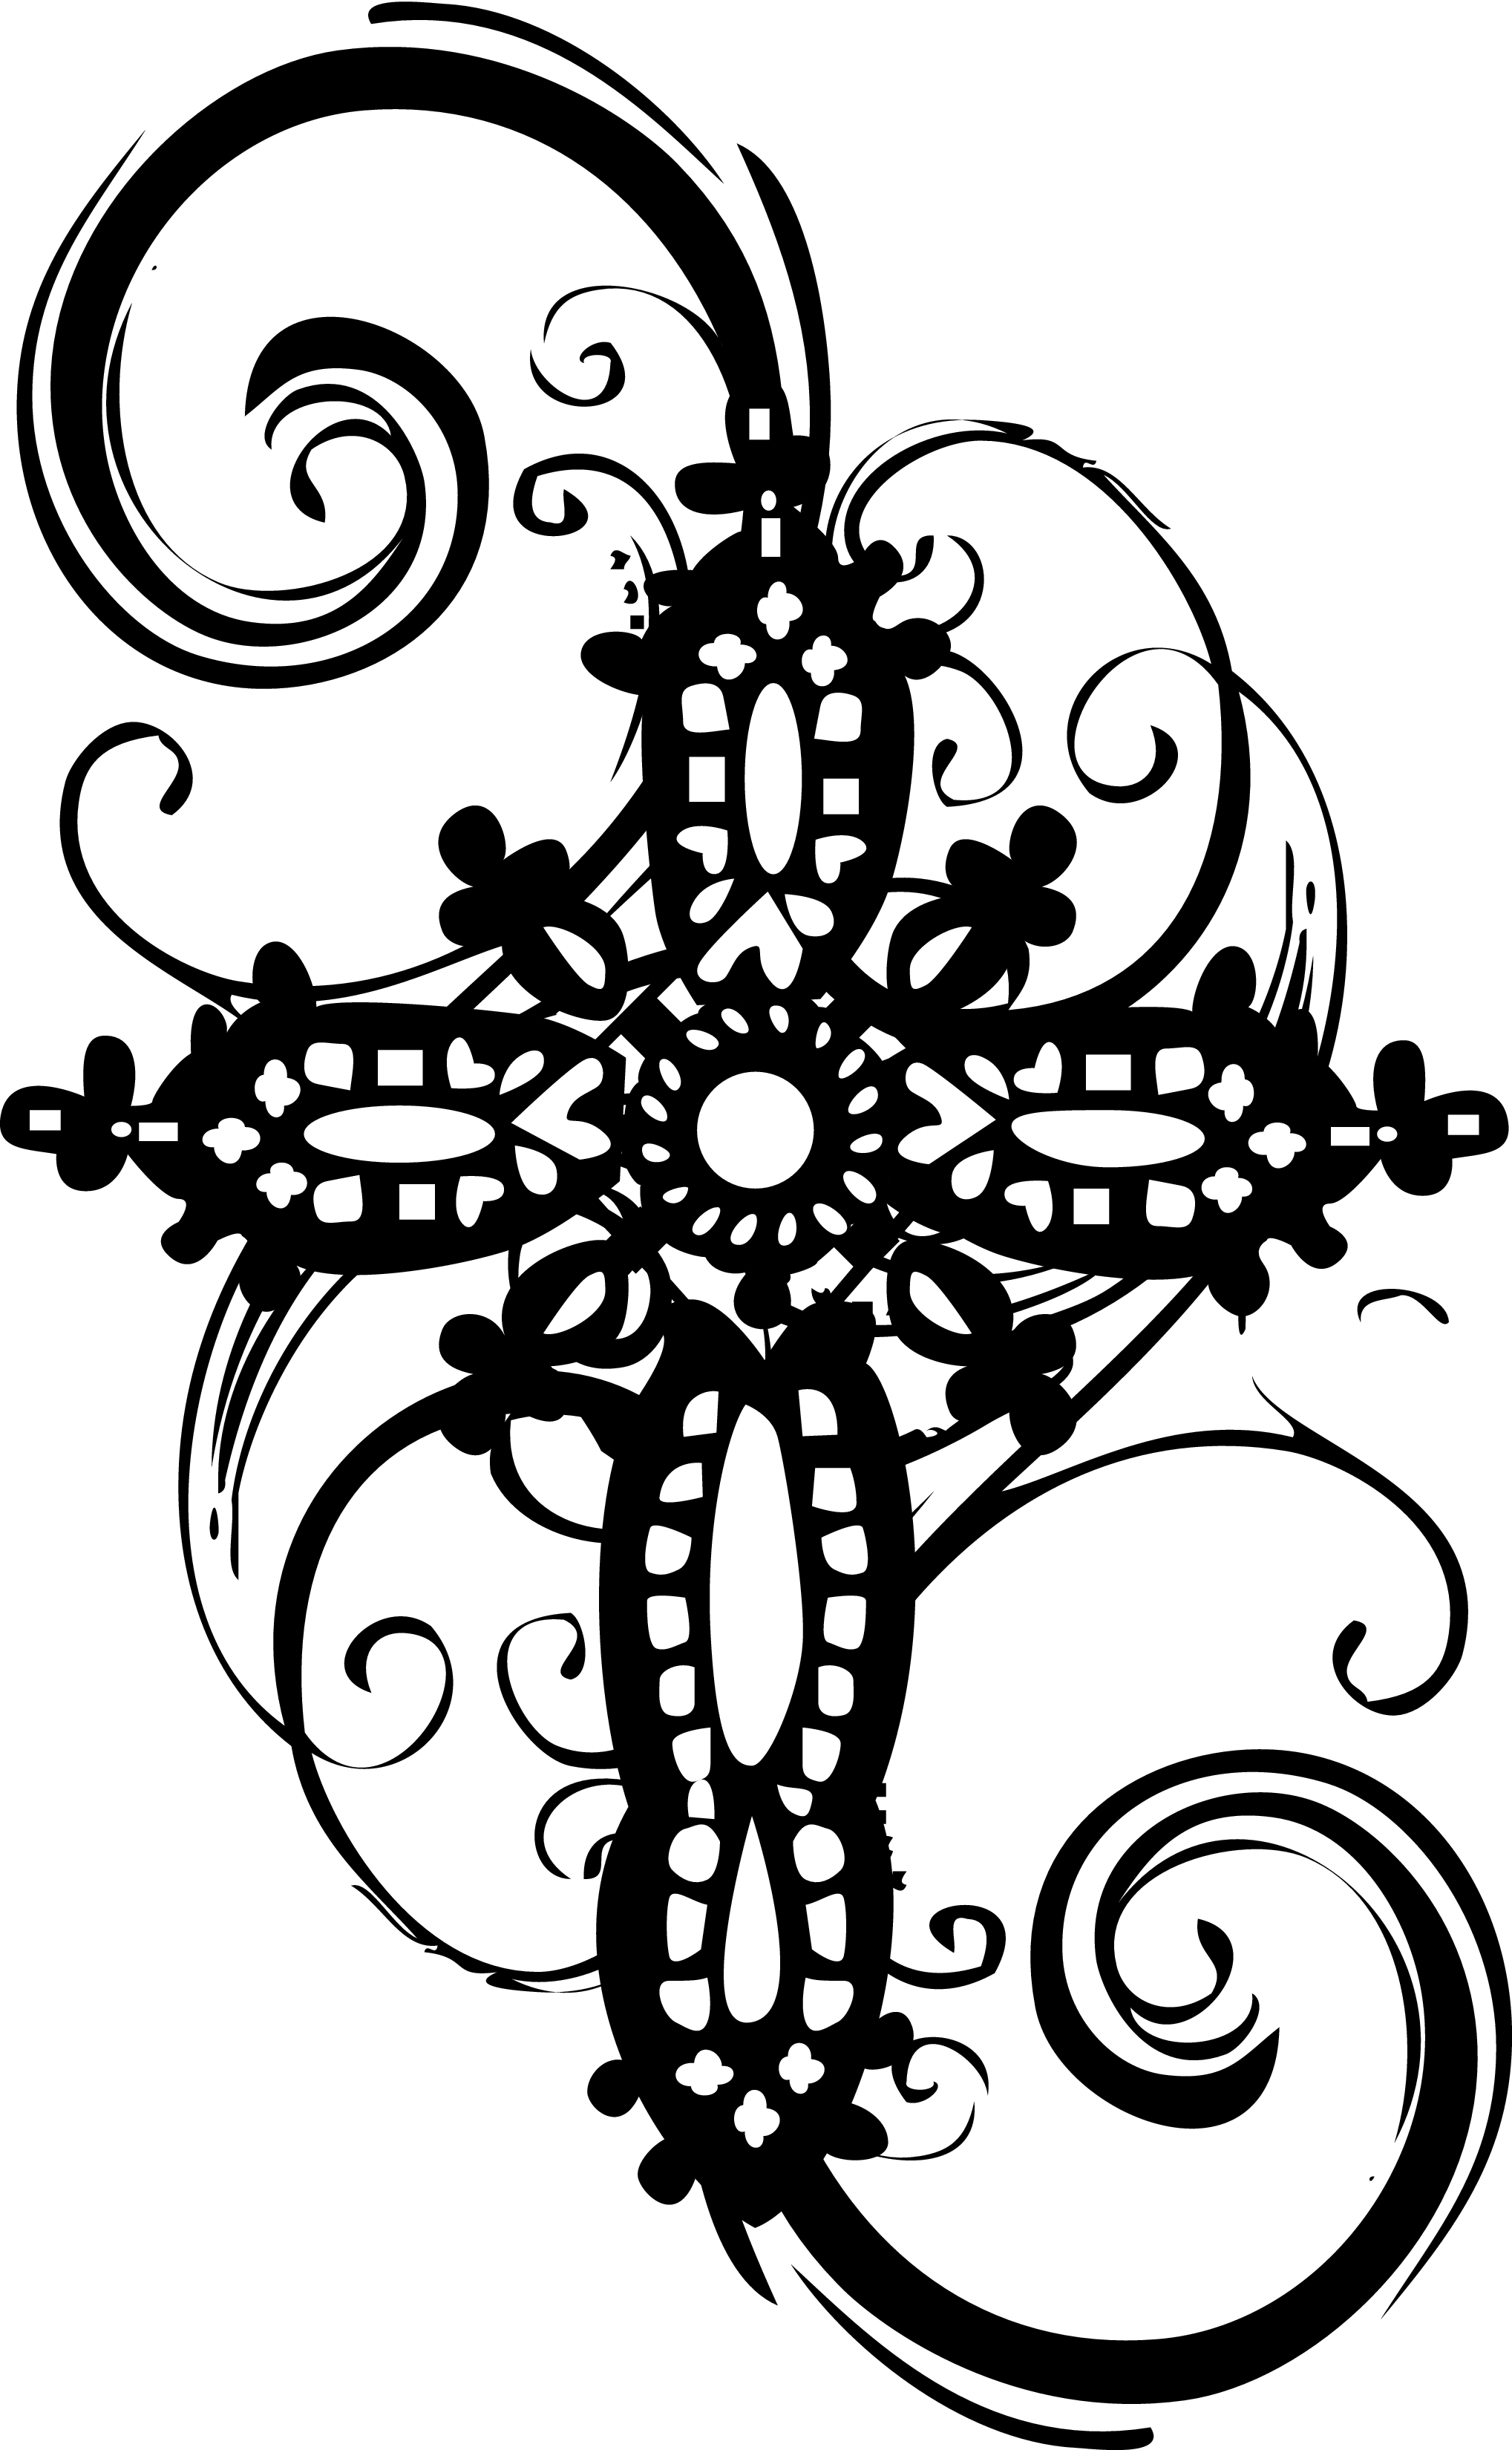 Ornate Cross Clipart